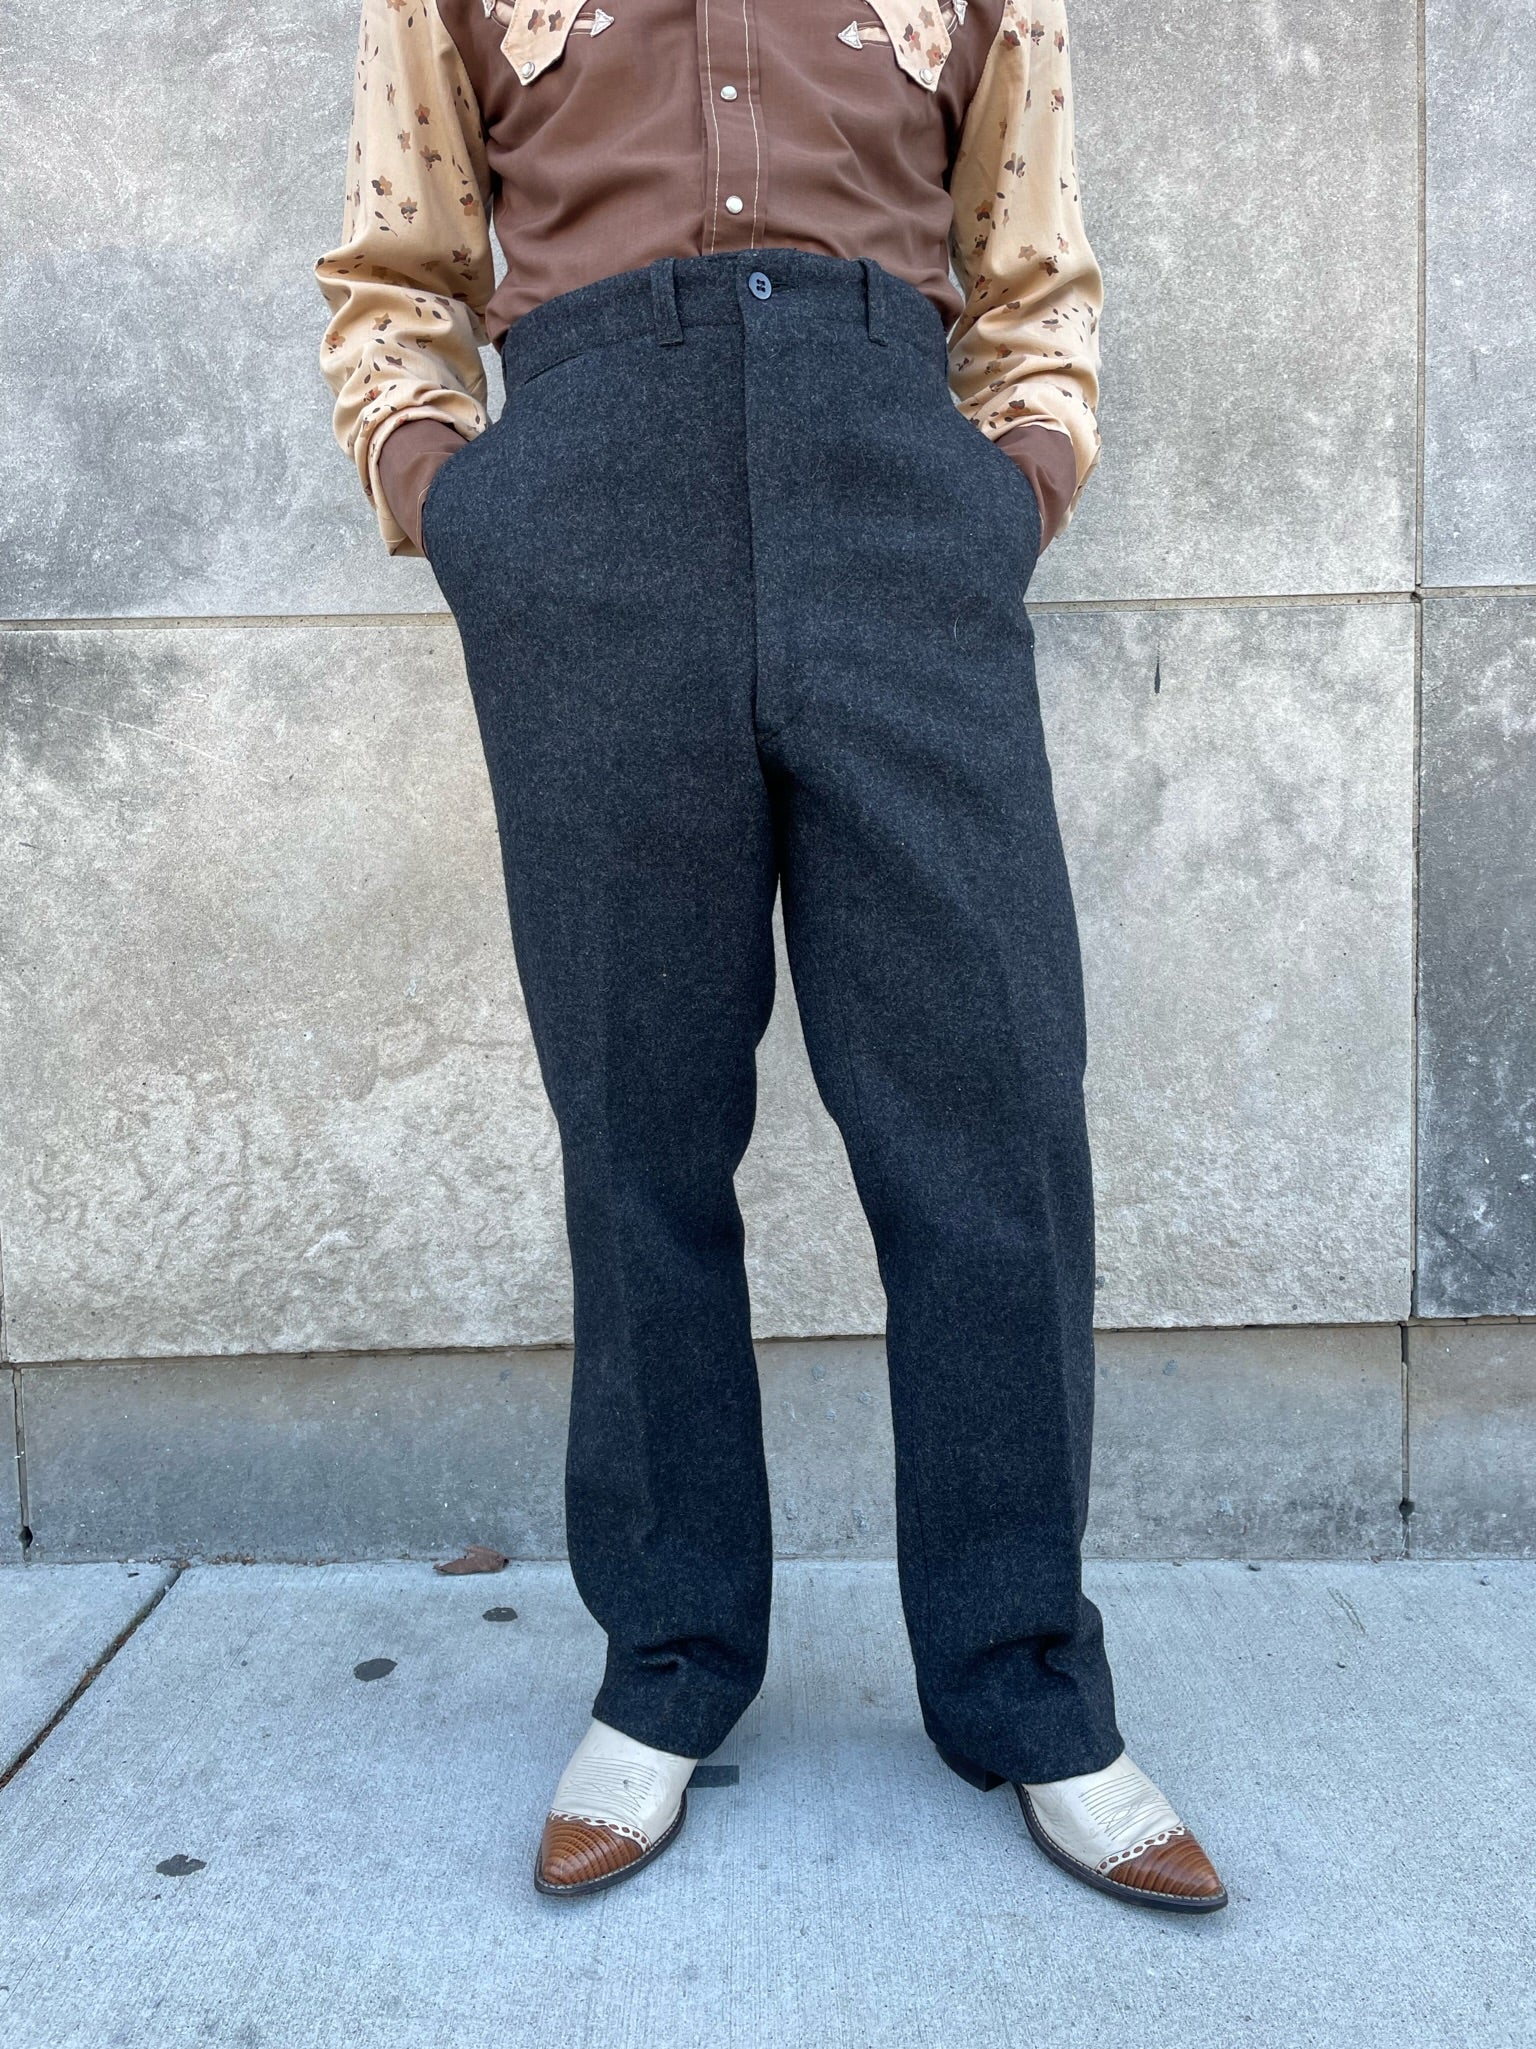 Men's Maine Guide Wool Pants with PrimaLoft, Plaid | Pants & Bibs at  L.L.Bean